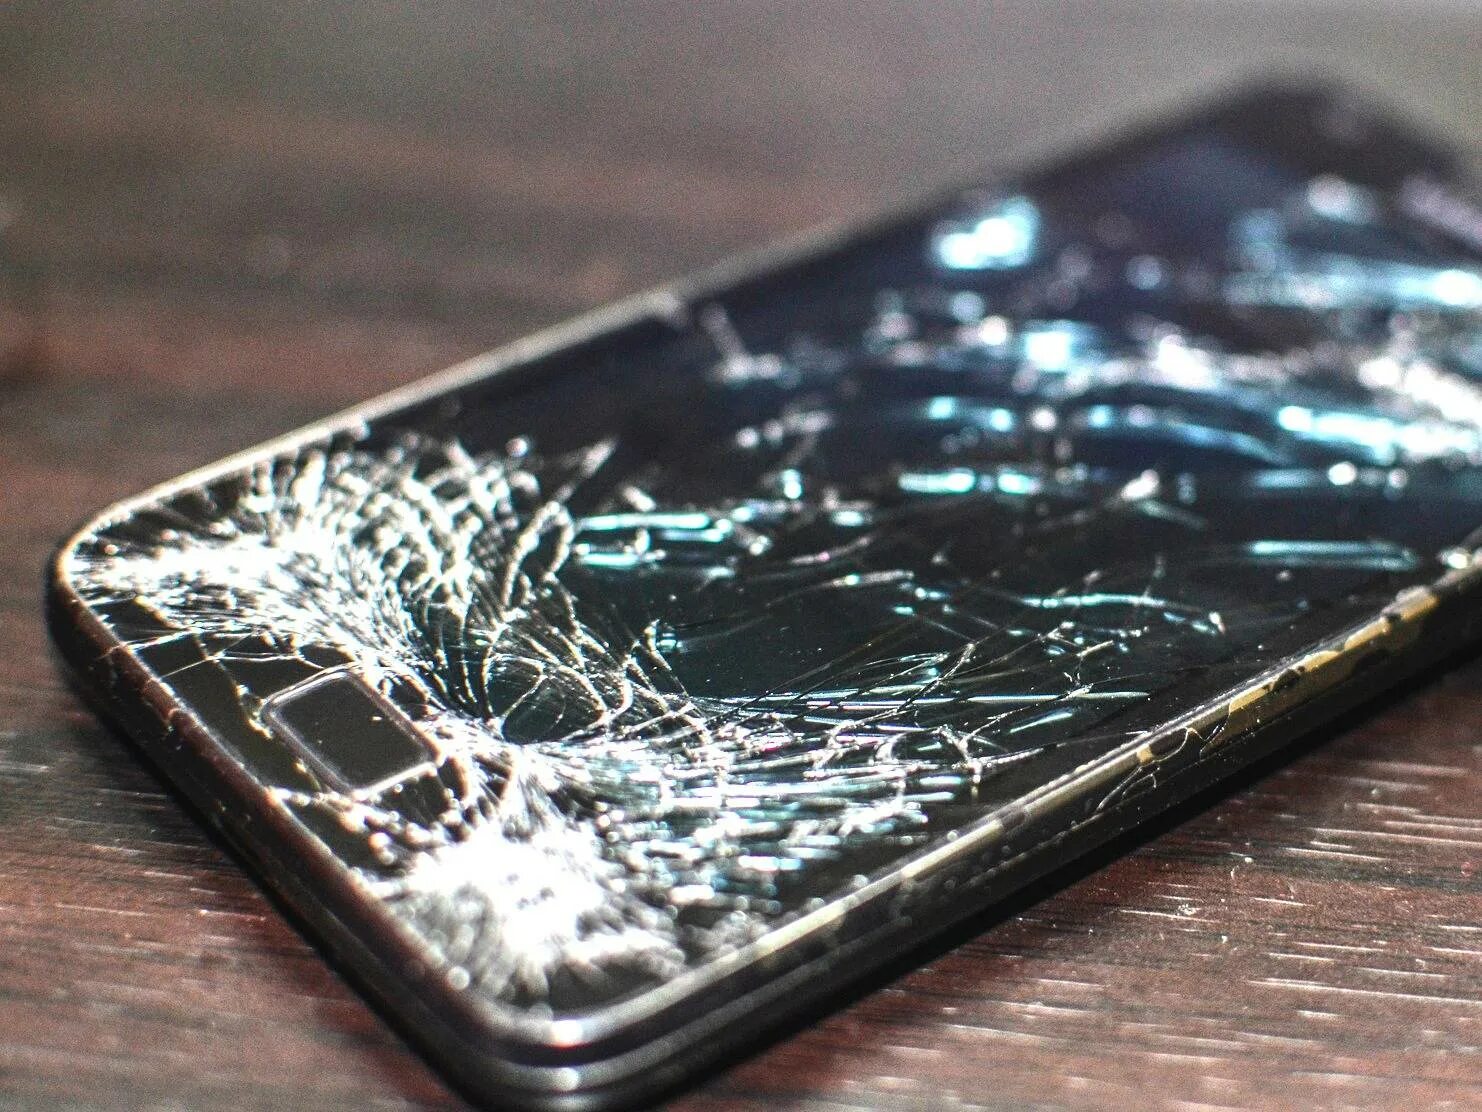 Купить телефон не разбиваемый. Разбитый смартфон. Сломанный смартфон. Разбитый айфон. Старый разбитый смартфон.